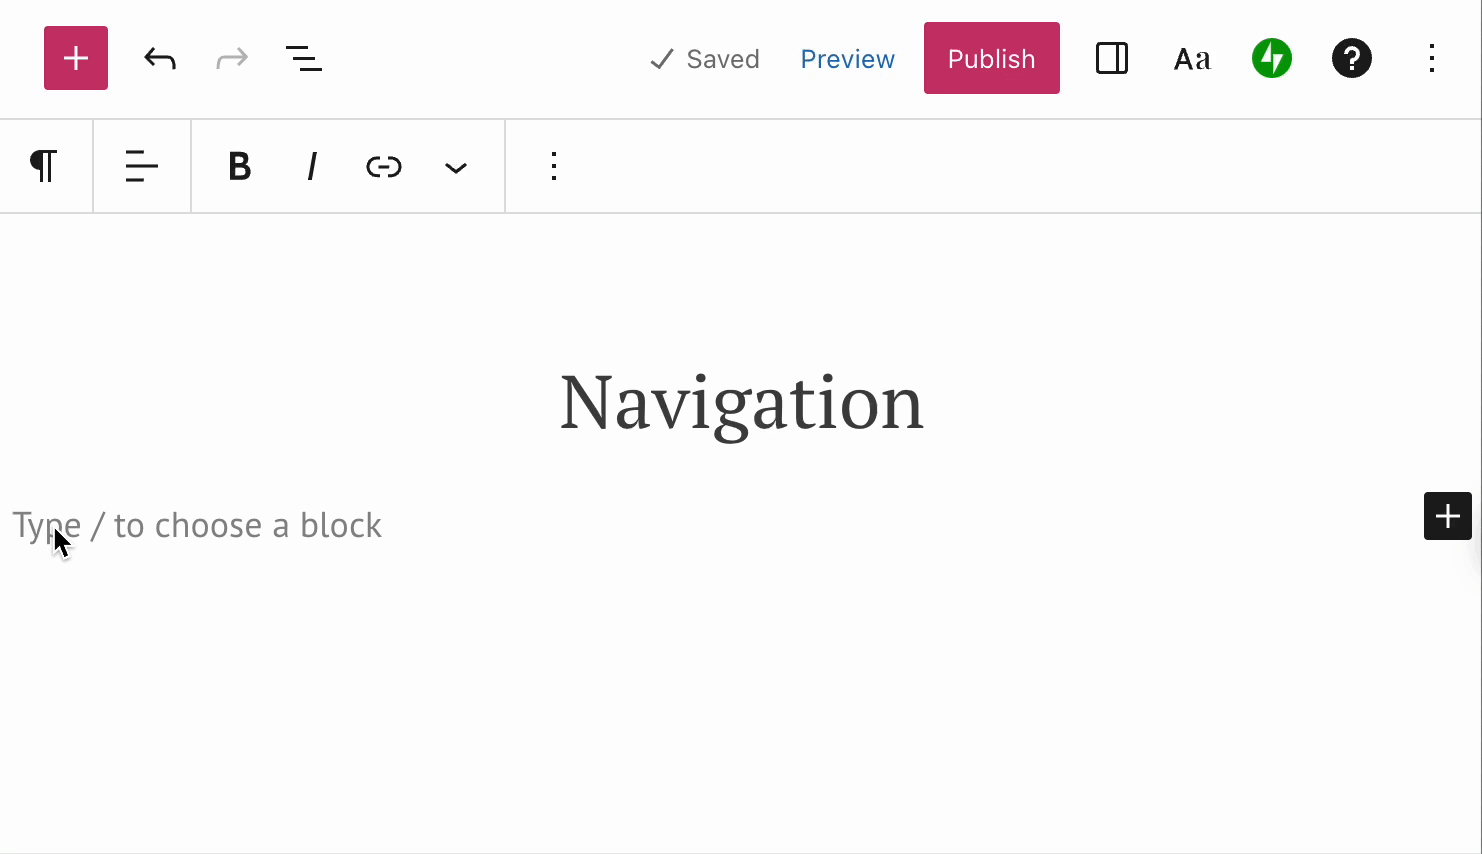 Une barre oblique suivie du texte « navigation » dans un espace vide de l’éditeur affiche les types de blocs correspondants à ajouter. 